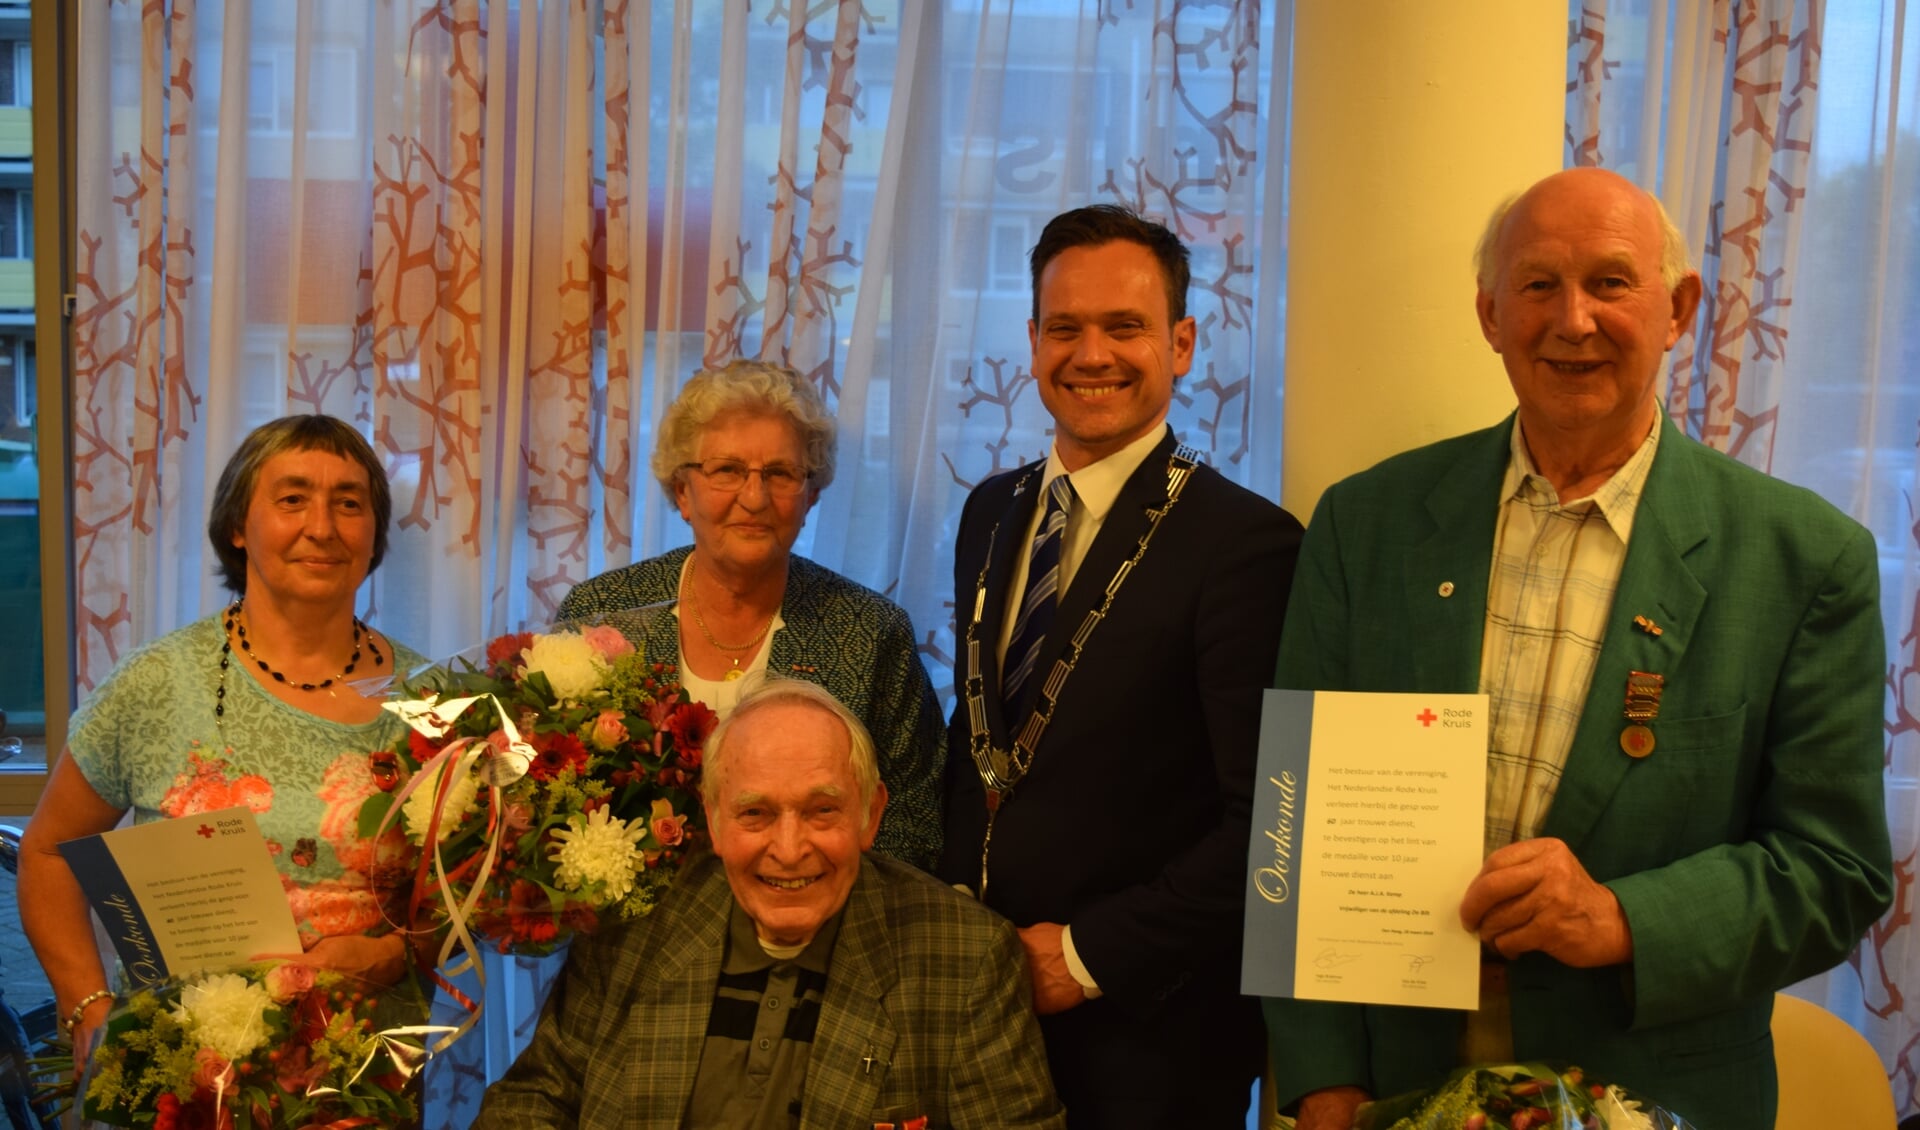  Bloemen en een lintje voor alle jubilarissen. V.l.n.r. Geertrui Lam, Hennie Mulder, burgemeester Sjoerd Potters en Arie Kemp, zittend: Herman Doornenbal.